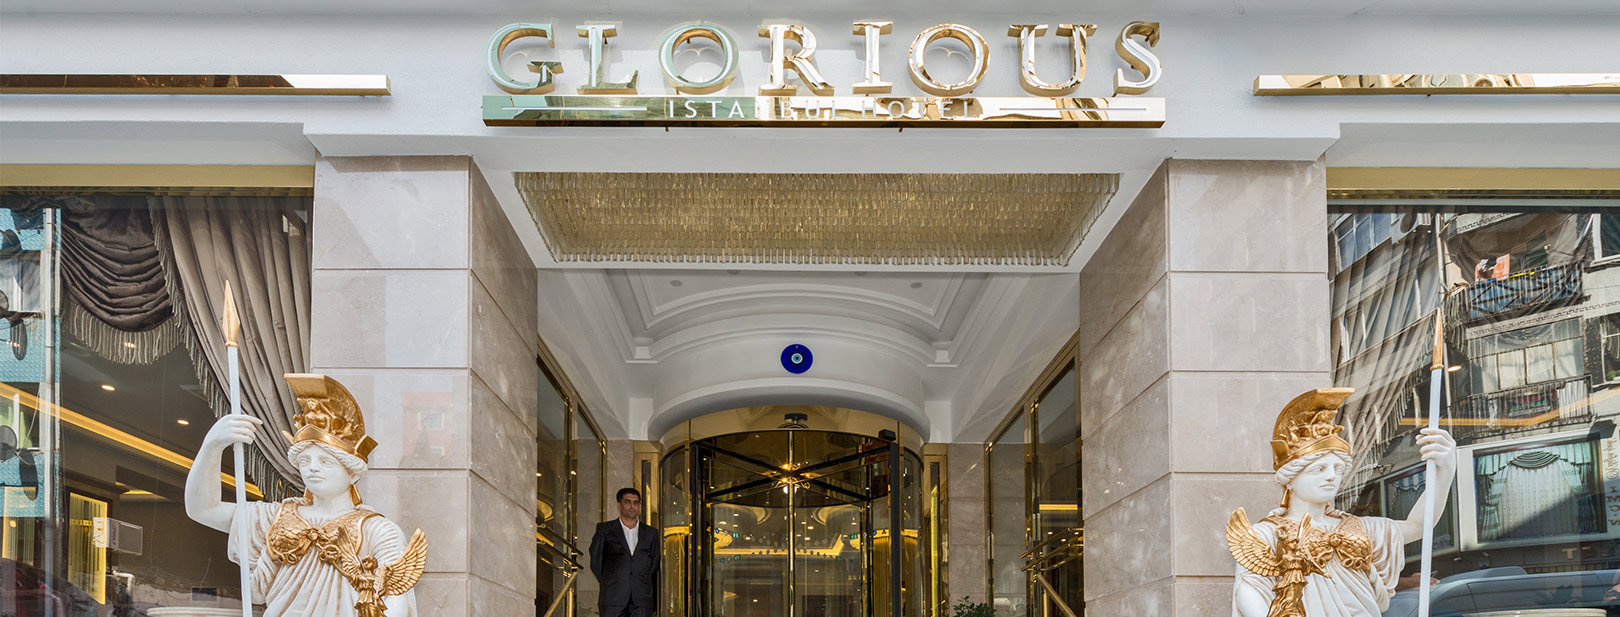 Turquie - Istanbul - Hôtel Glorious 4*